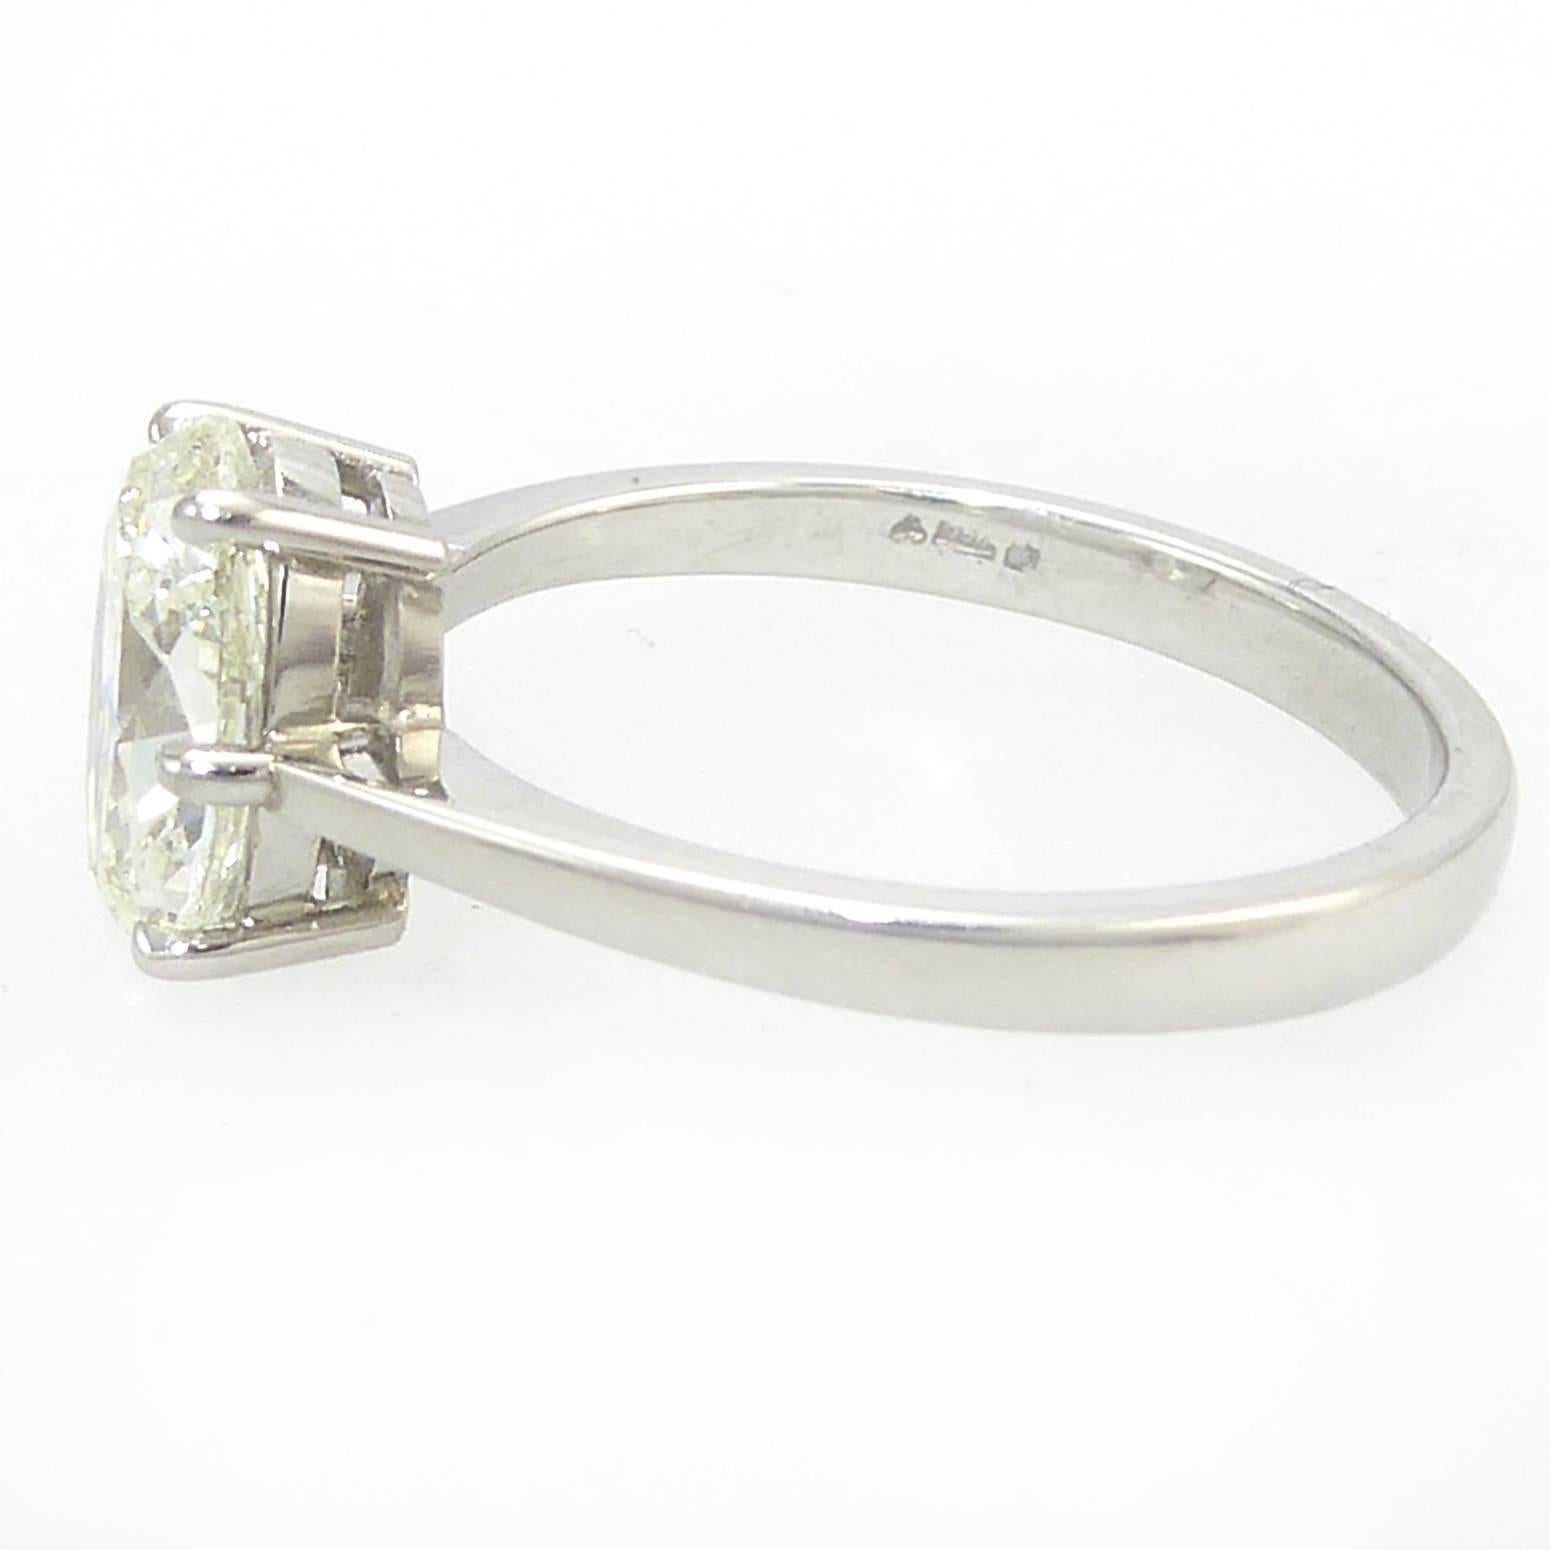 Oval Diamond Engagement Ring, 1.51 Carat Brilliant Cut Solitaire, Platinum 2